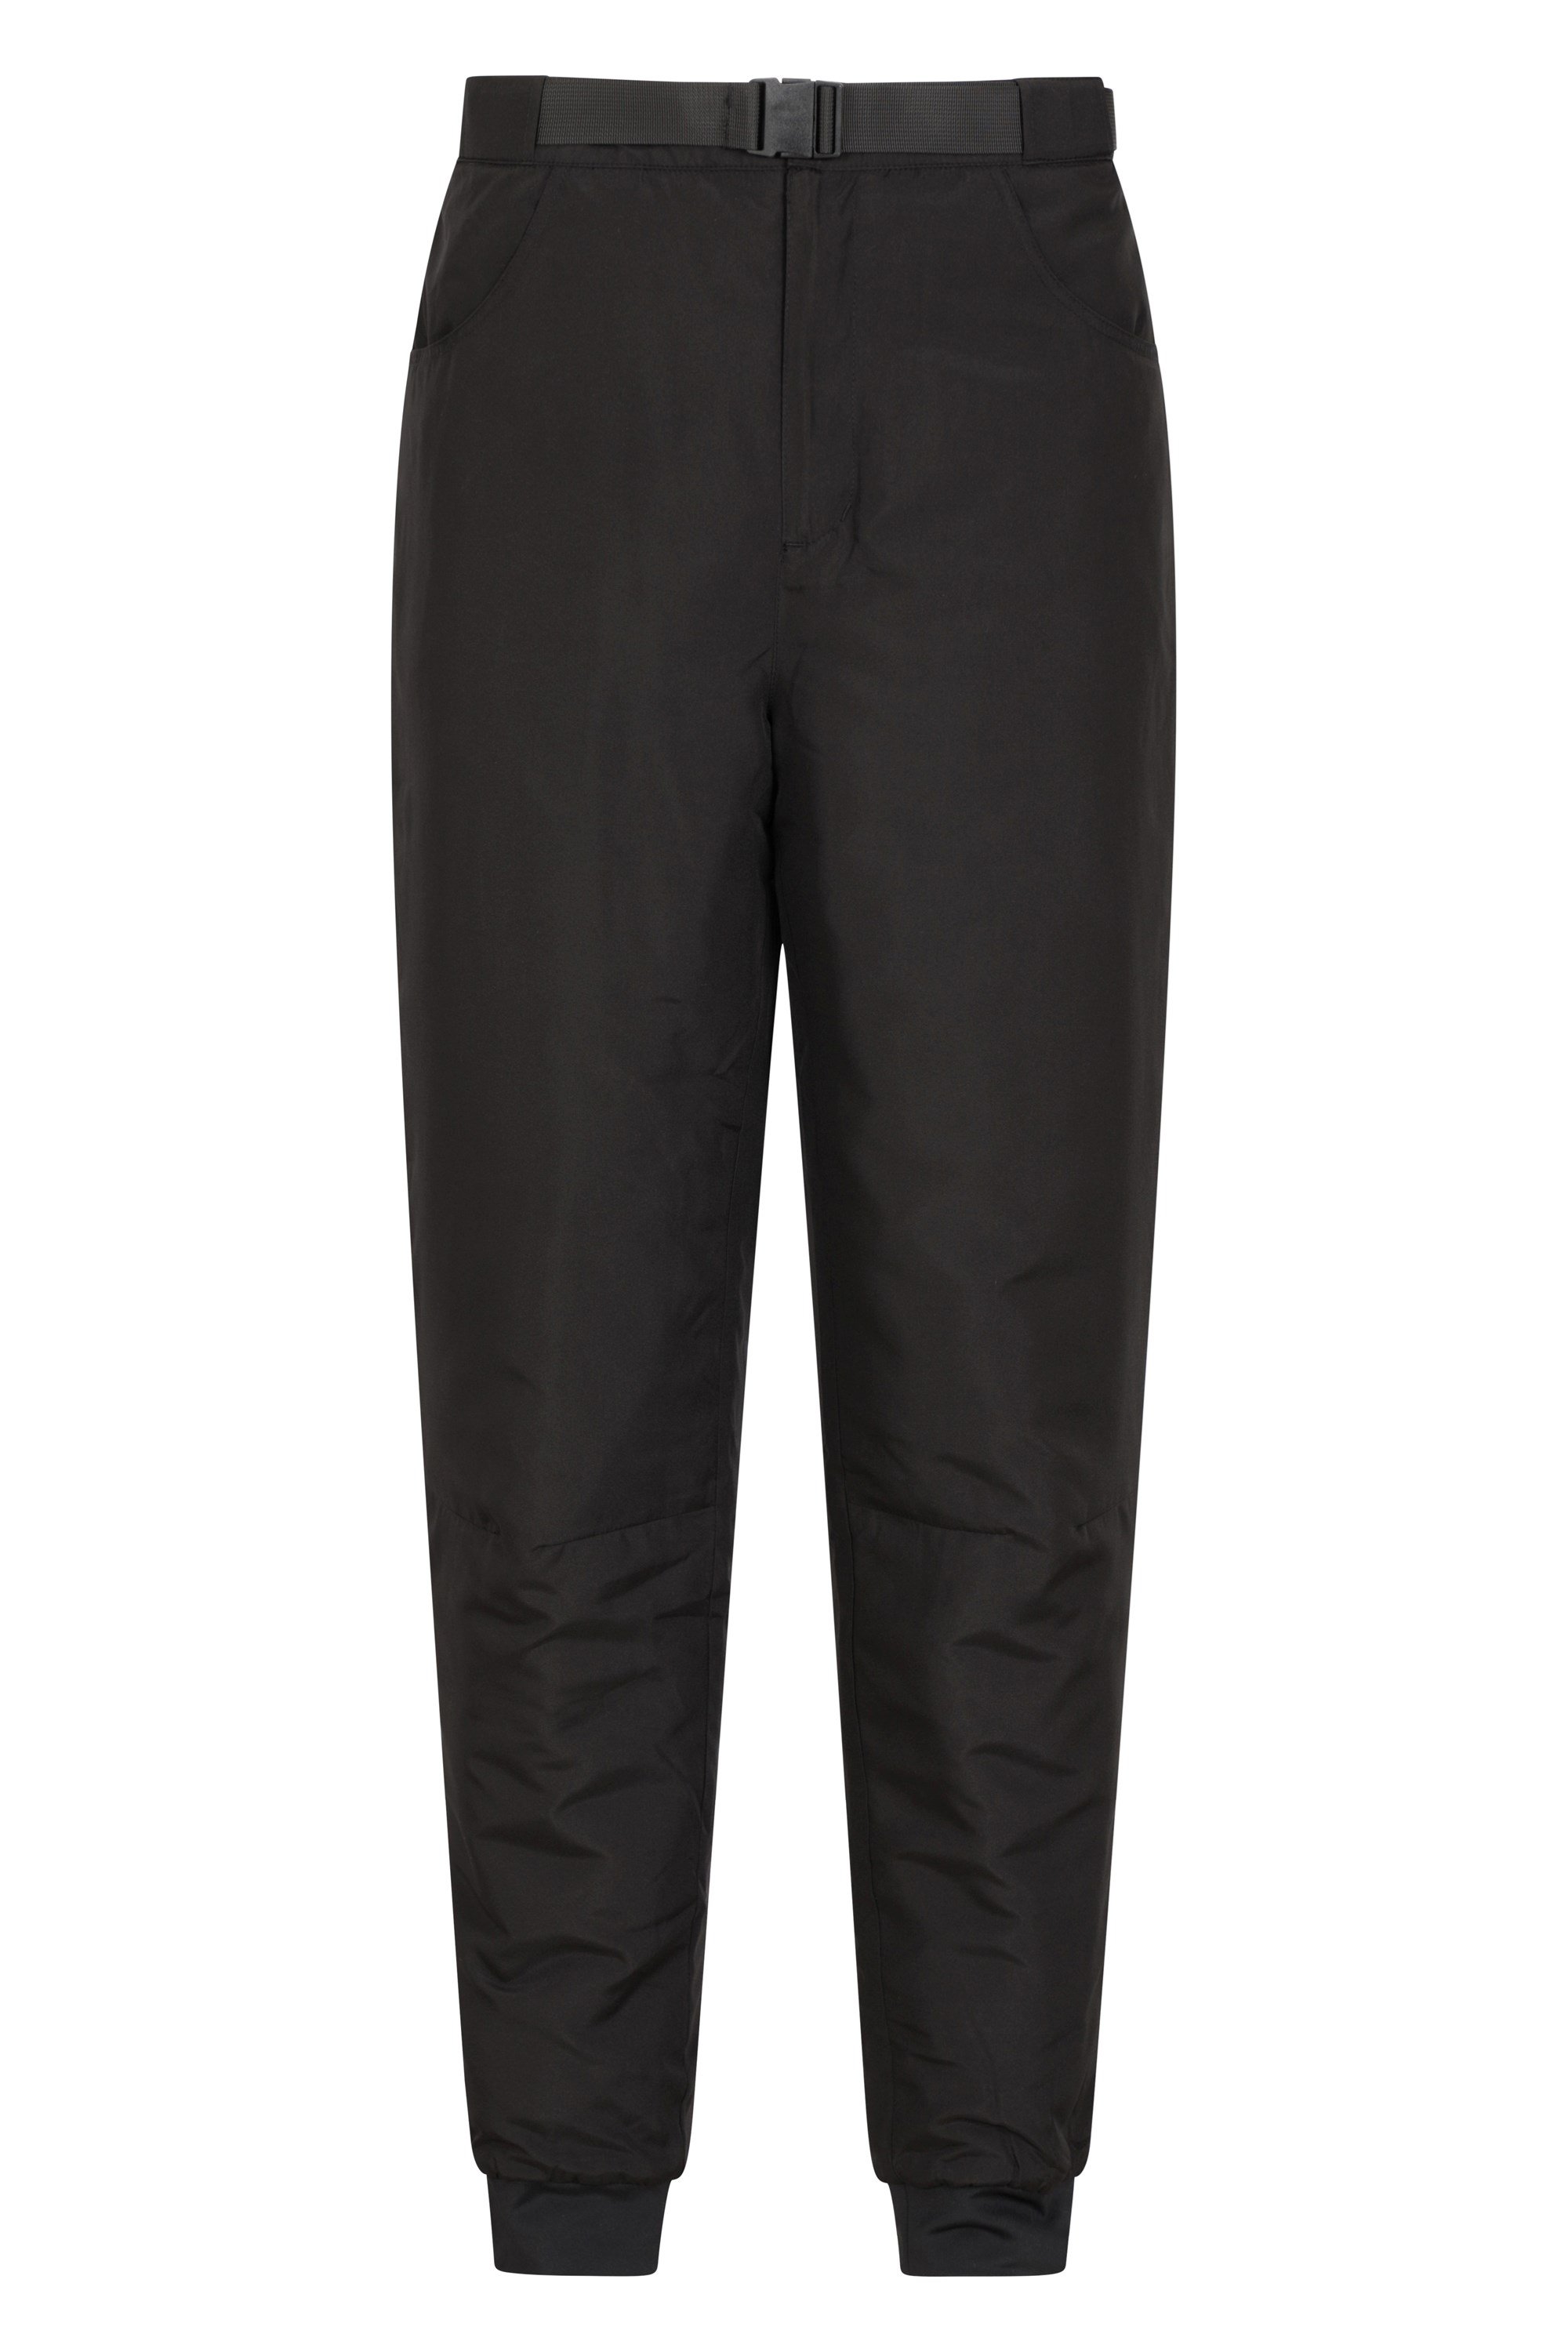 Marsh Mens Insulated Trousers - Short Length - Black